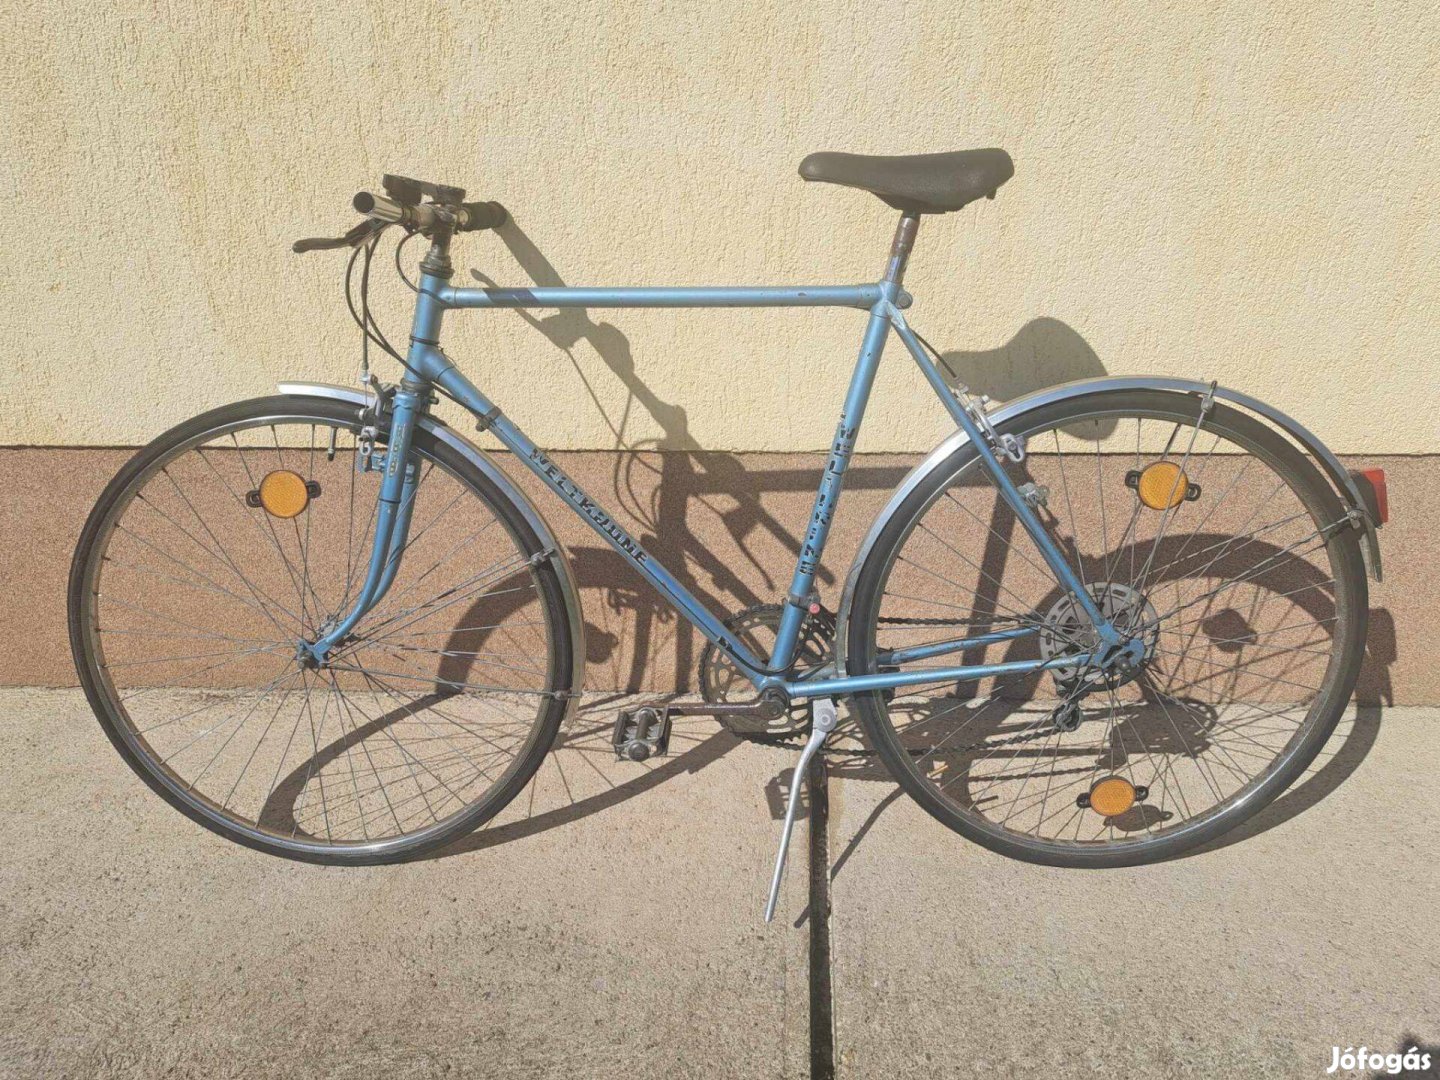 Weltkrog országúti retro bicaj eladó